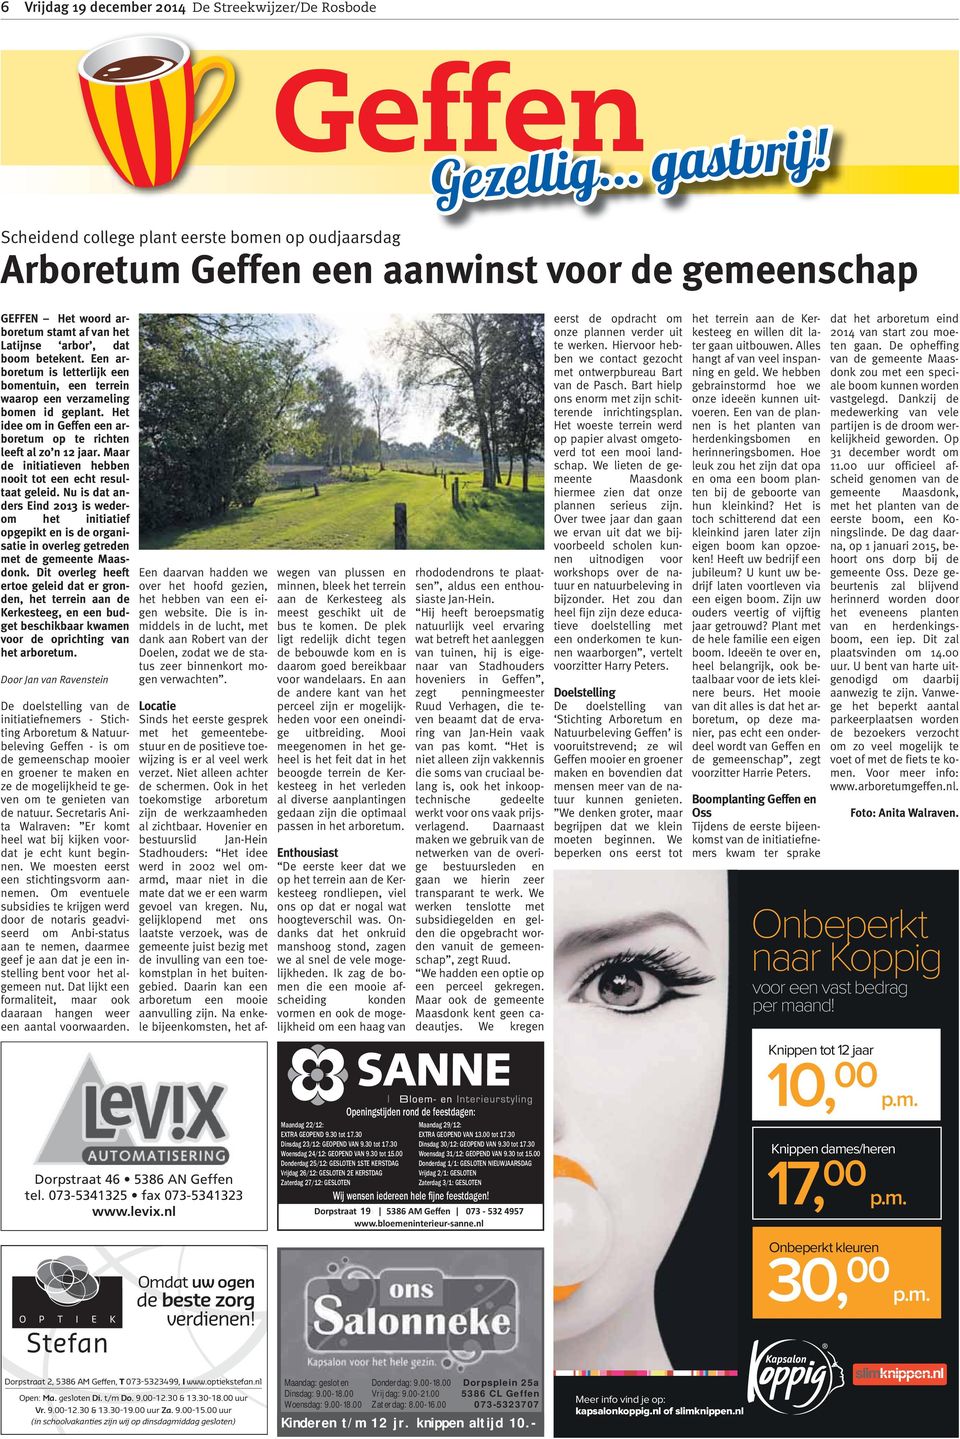 Het idee om in Geffen een arboretum op te richten leeft al zo n 12 jaar. Maar de initiatieven hebben nooit tot een echt resultaat geleid.